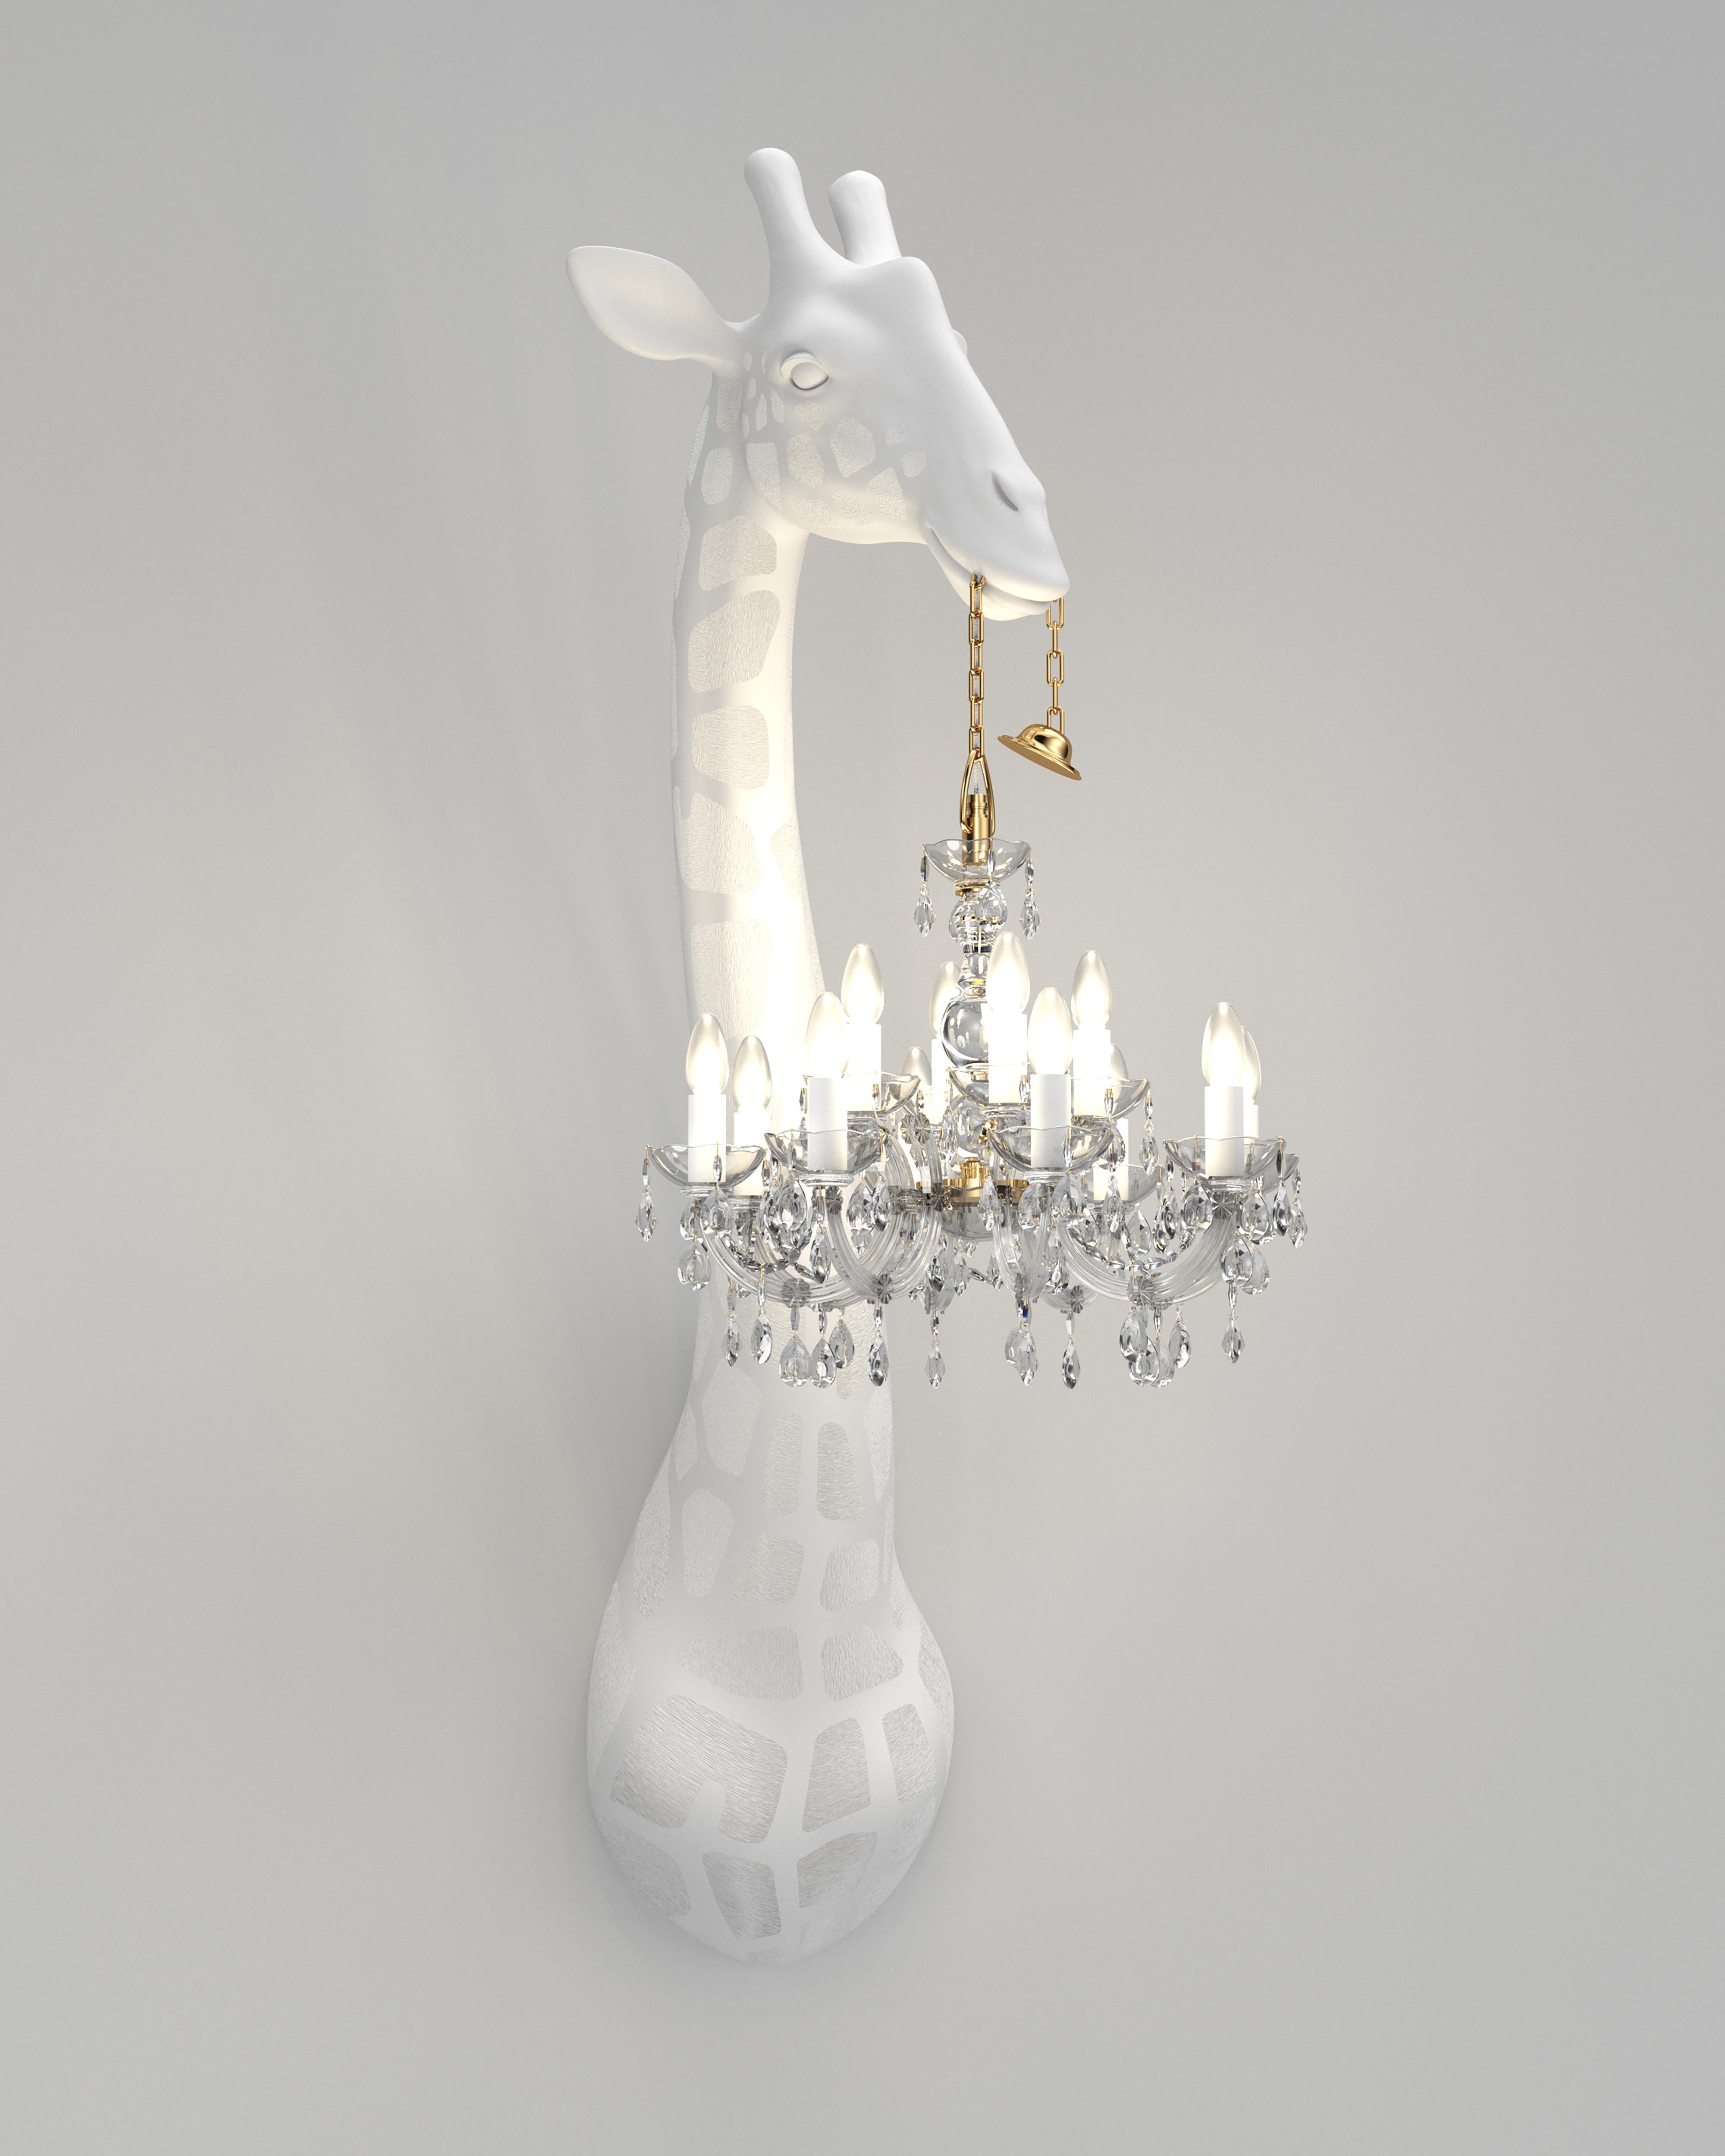 For Sale: White Modern 5.5 Foot White or Black Giraffe Wall Lamp Sconce Chandalier 3